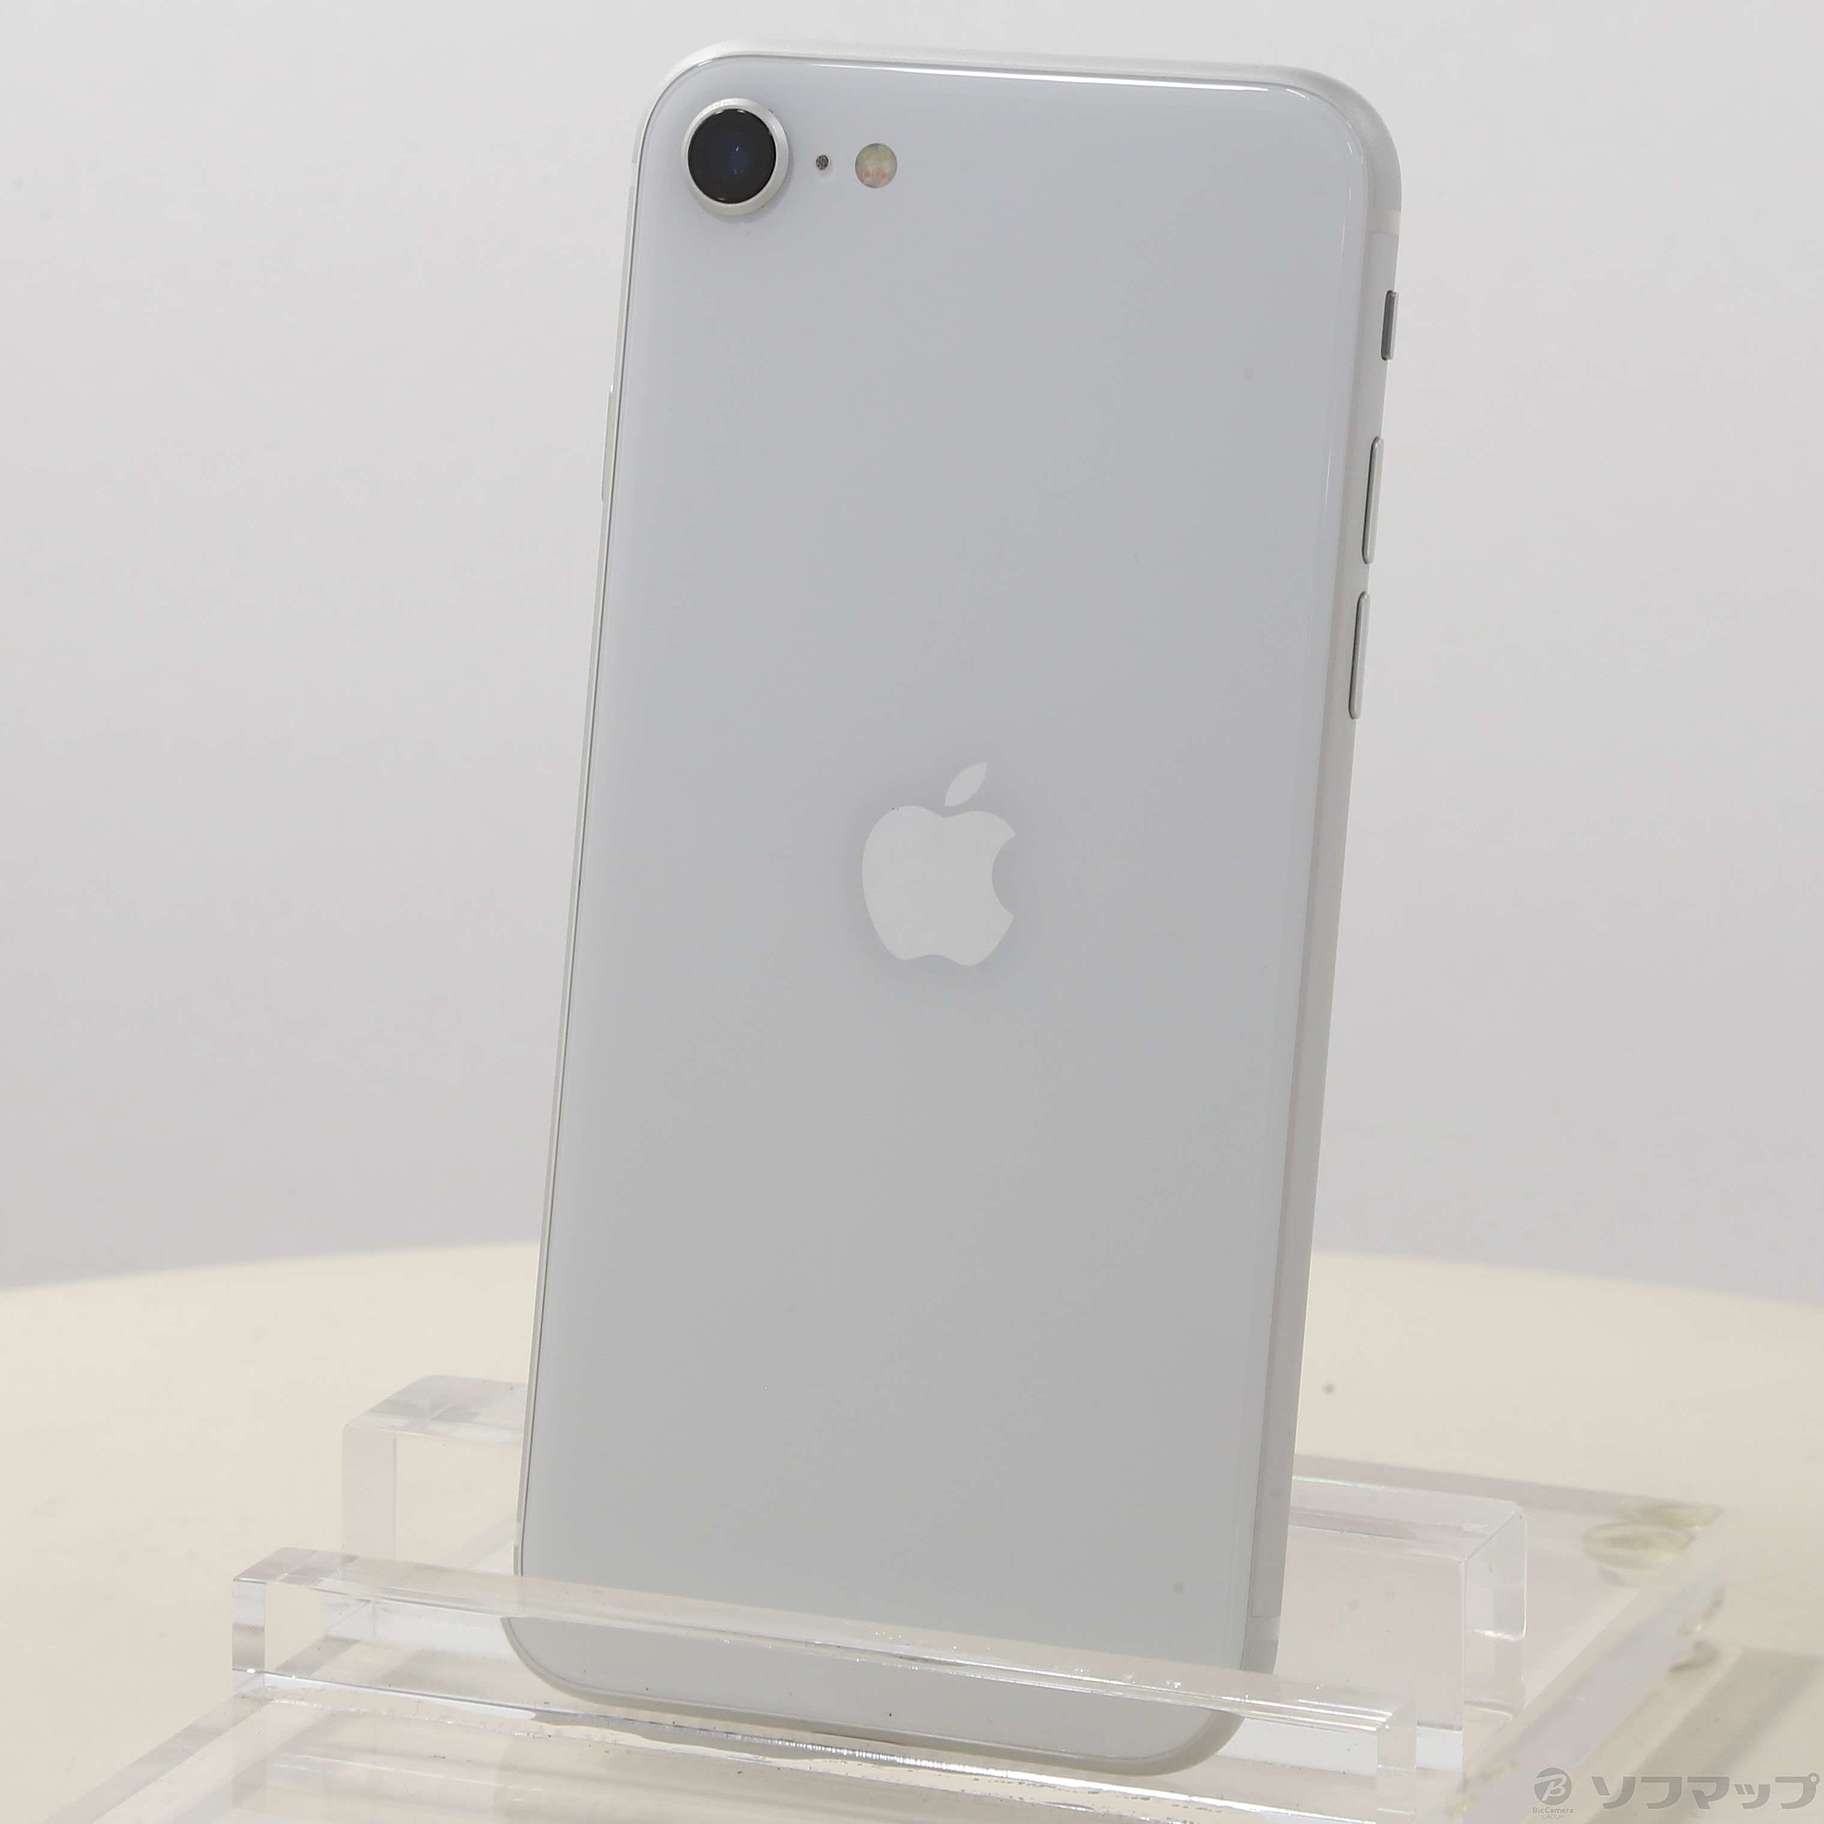 アップル iPhoneSE 第2世代 256GB ホワイト